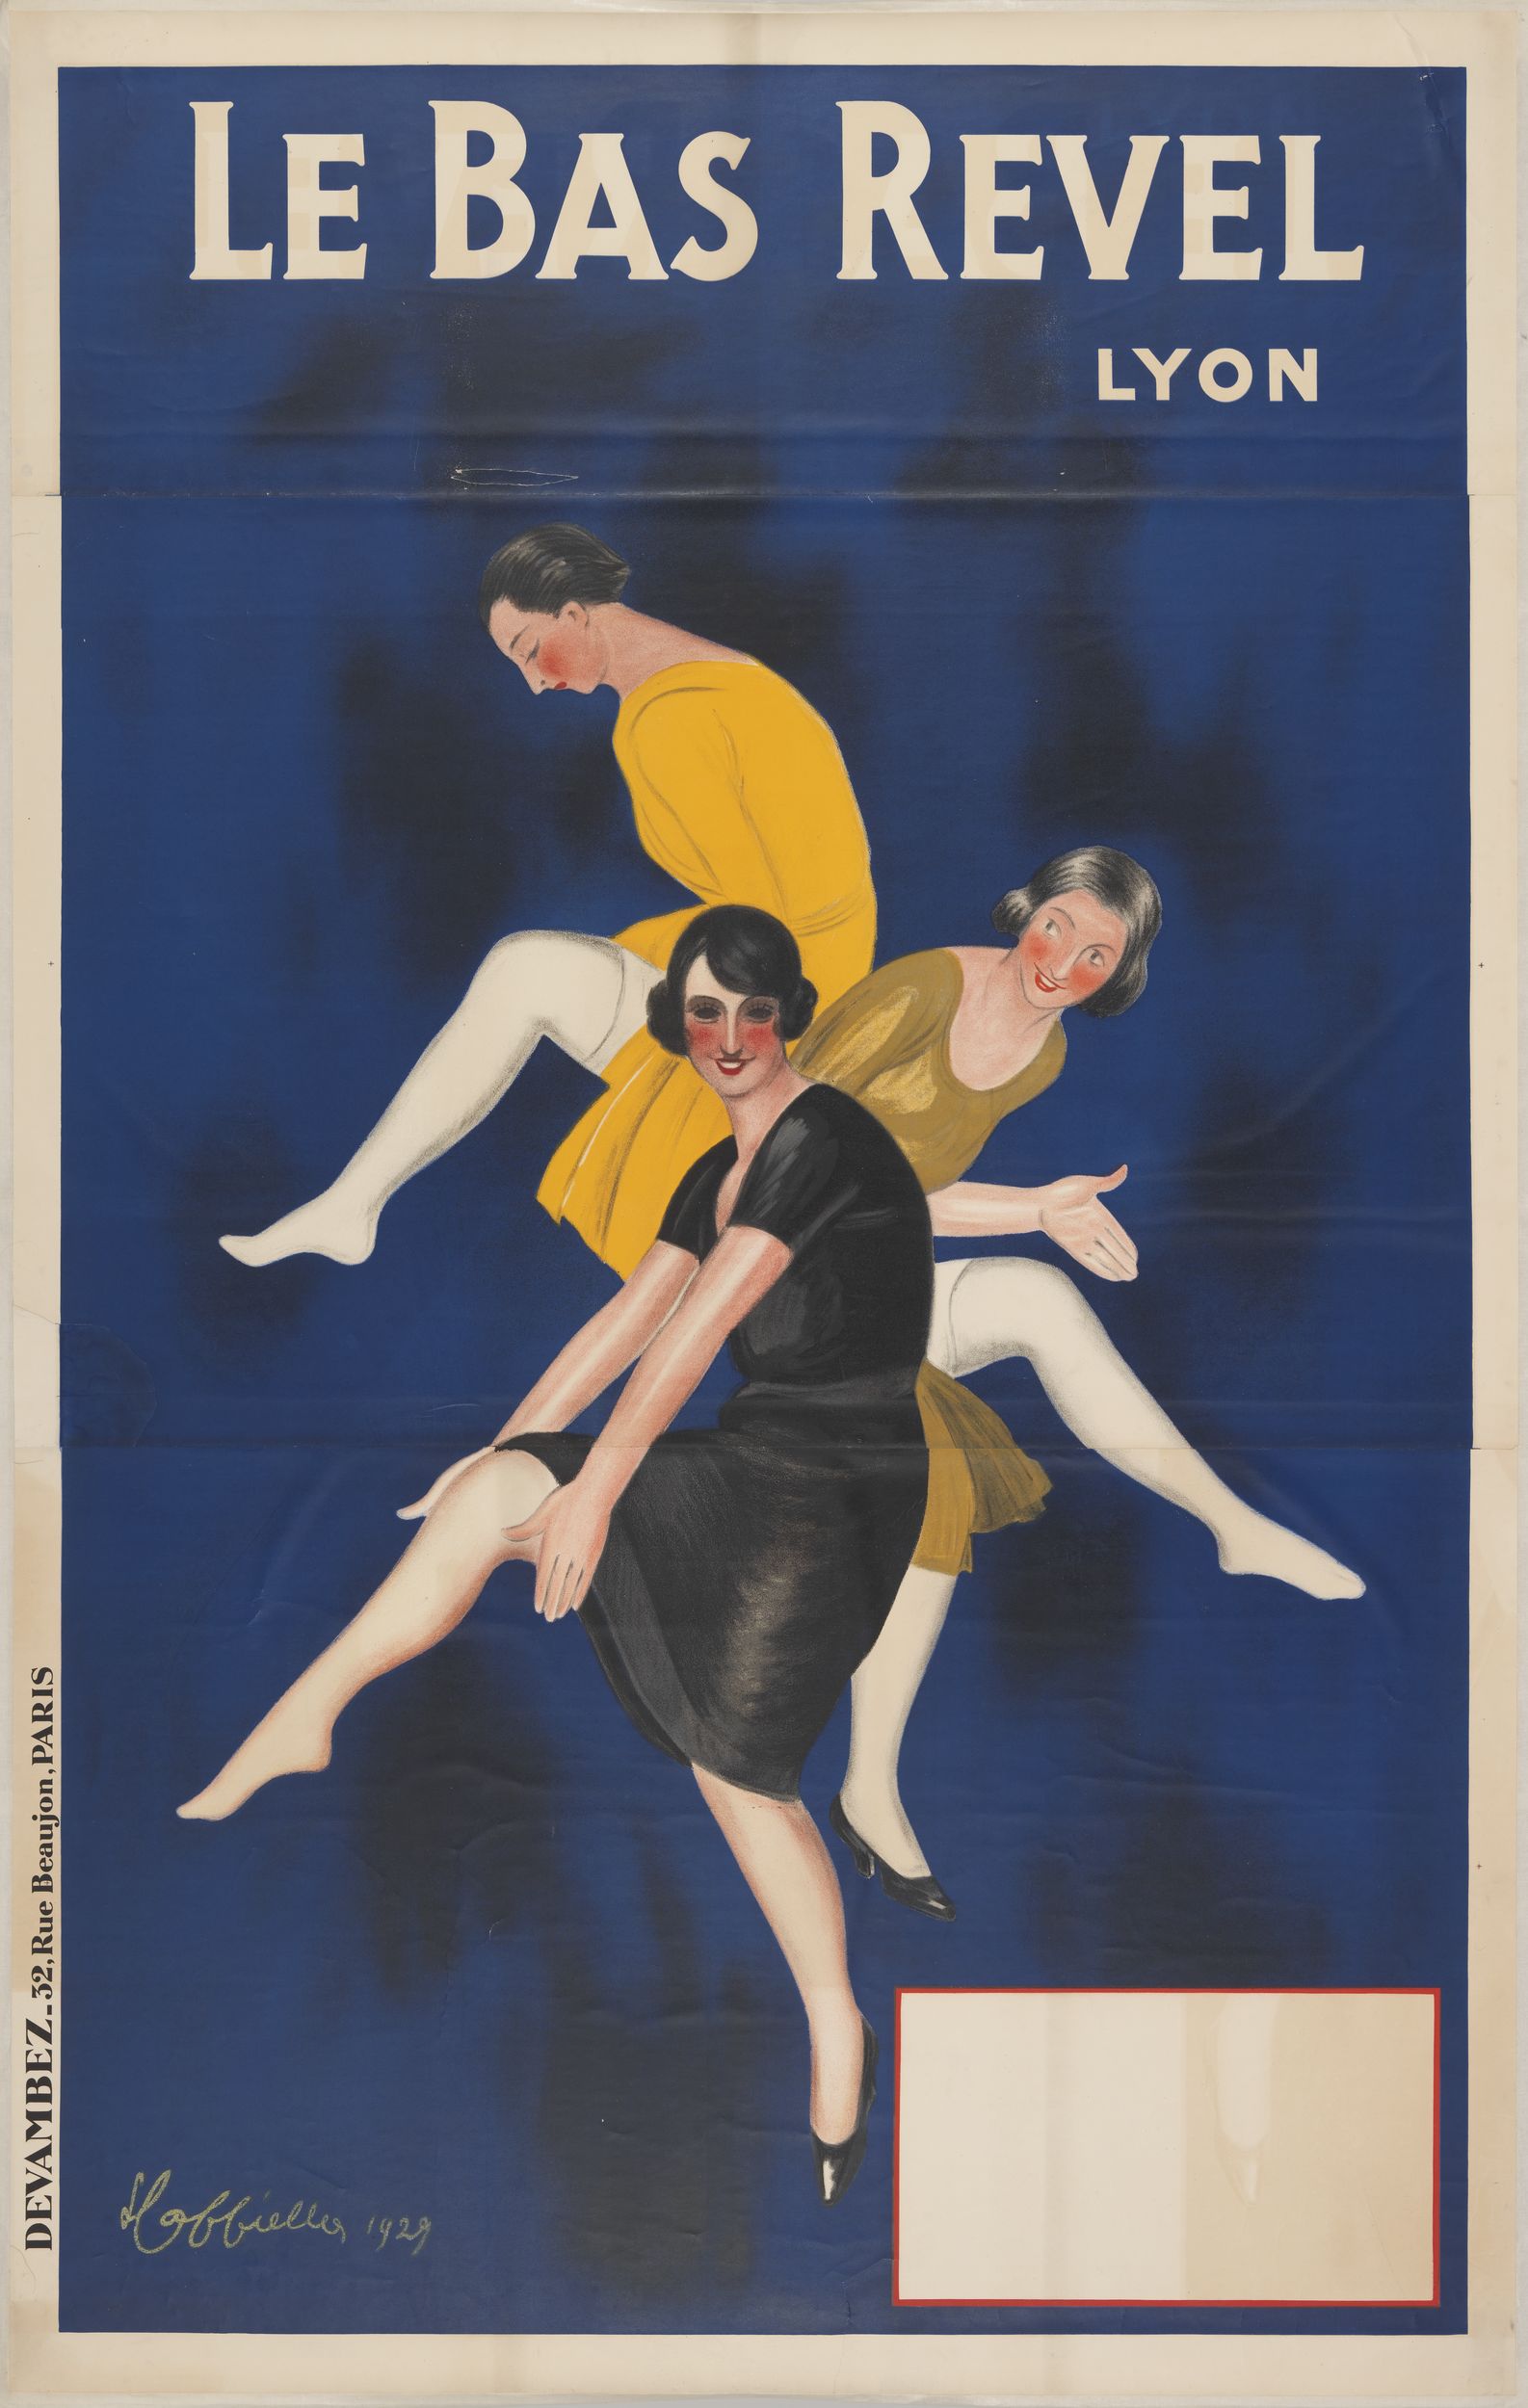 Le bas Revel : affiche publicitaire couleur très grand format par L. Capiello (1929, cote : 7FI/1416)